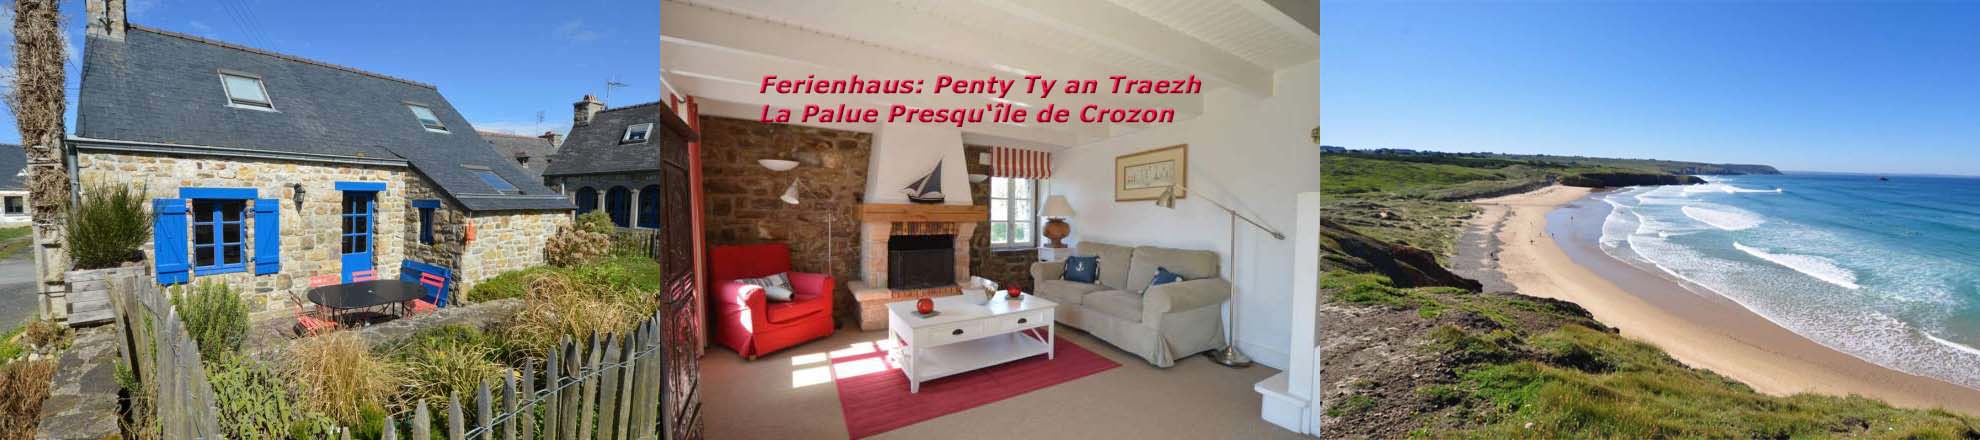 Ferienhaus Bretagne: Penty Ty an traezh, nahe des La Palue